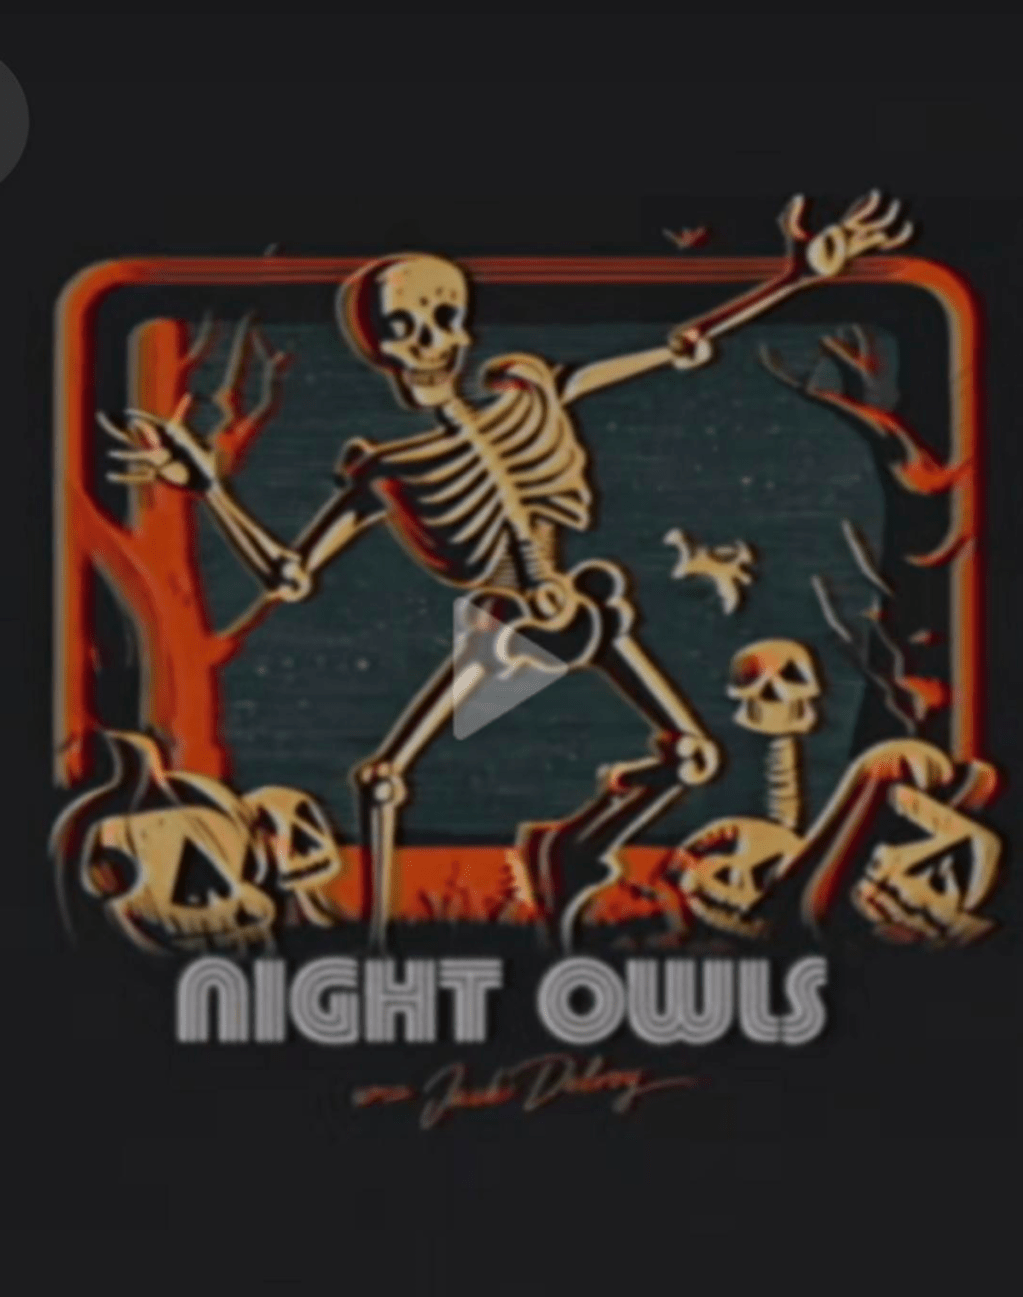 Late Night Owls-AI